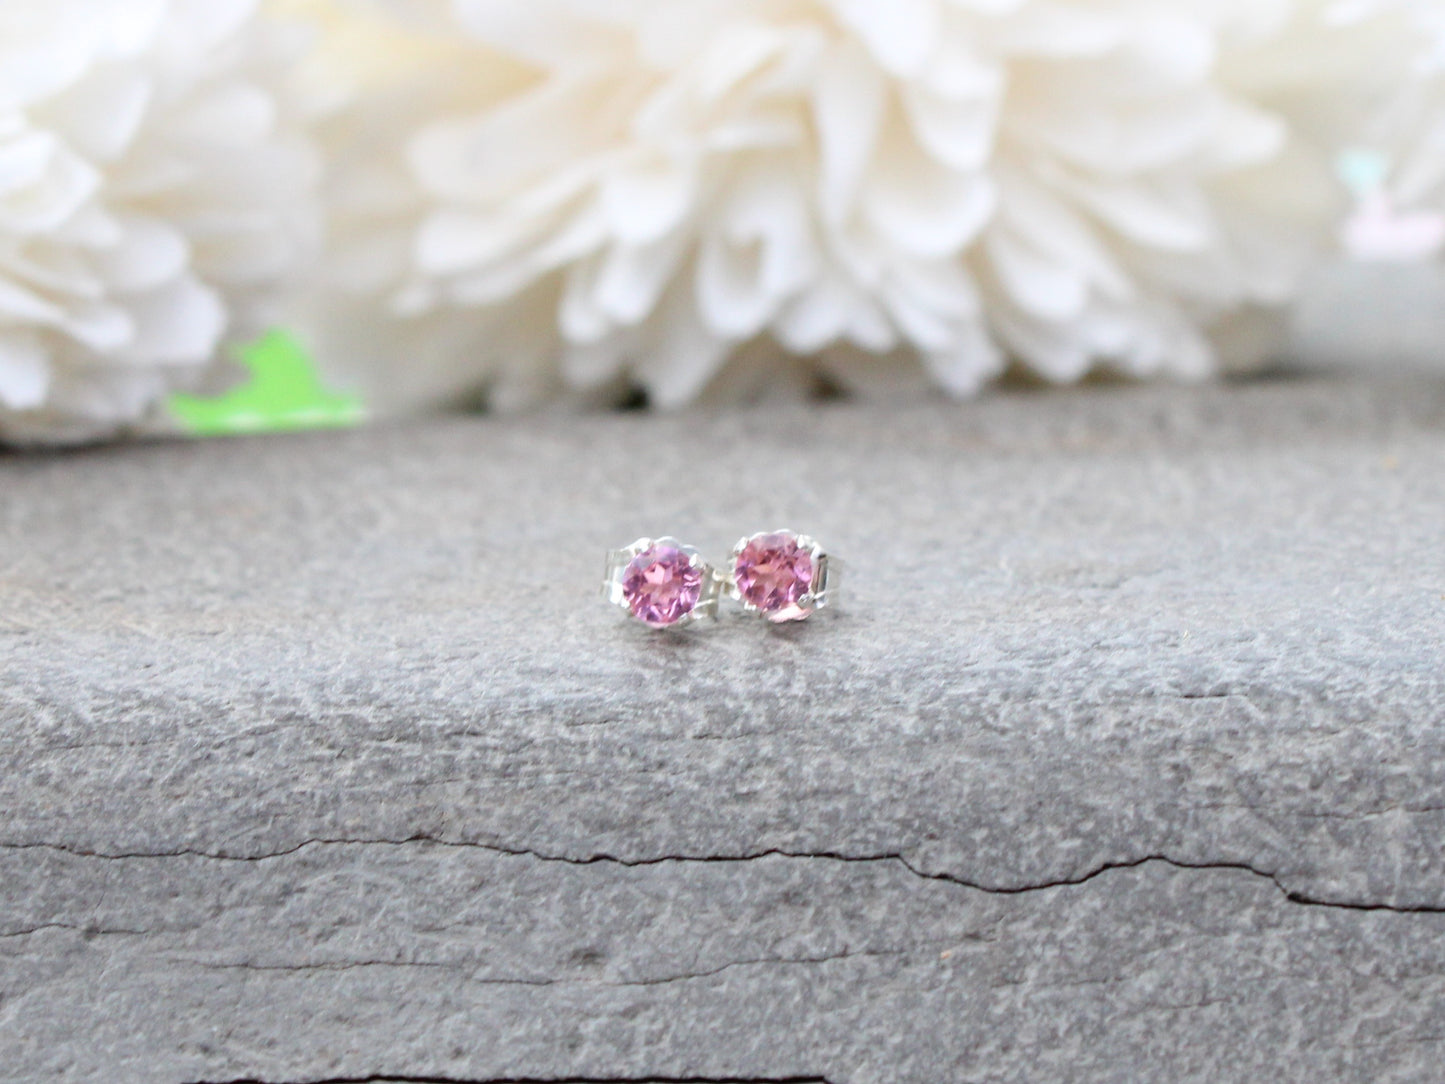 Pink tourmaline stud earrings in sterling silver.